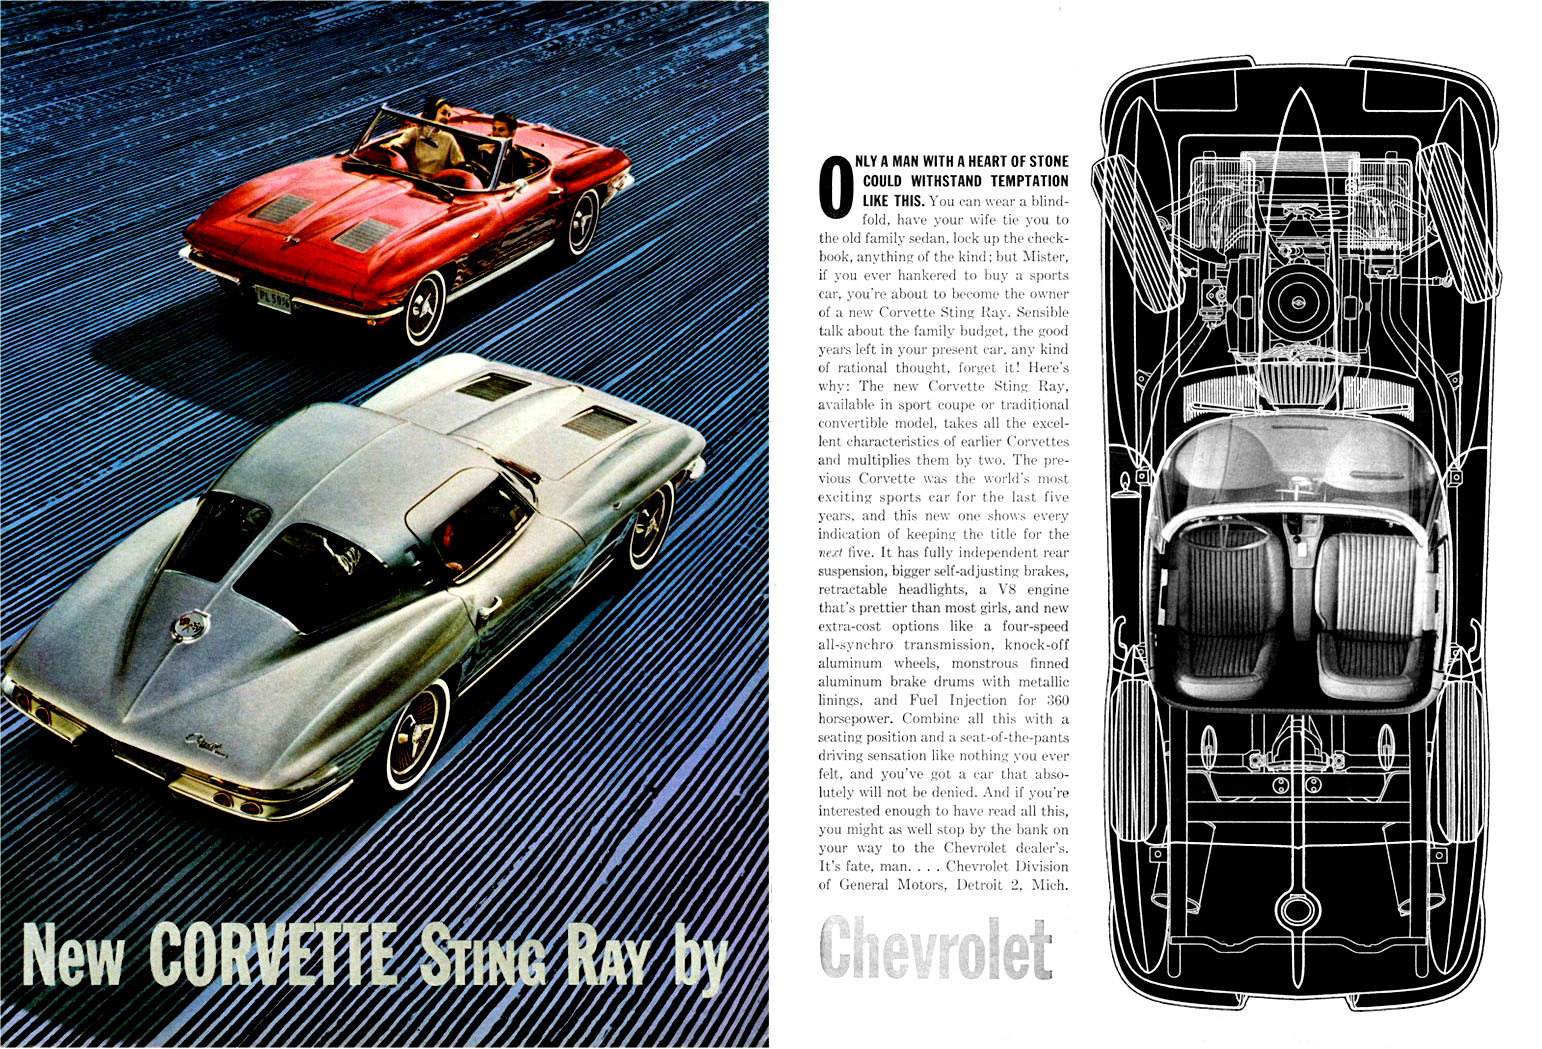 1963 Chevrolet Auto Advertising